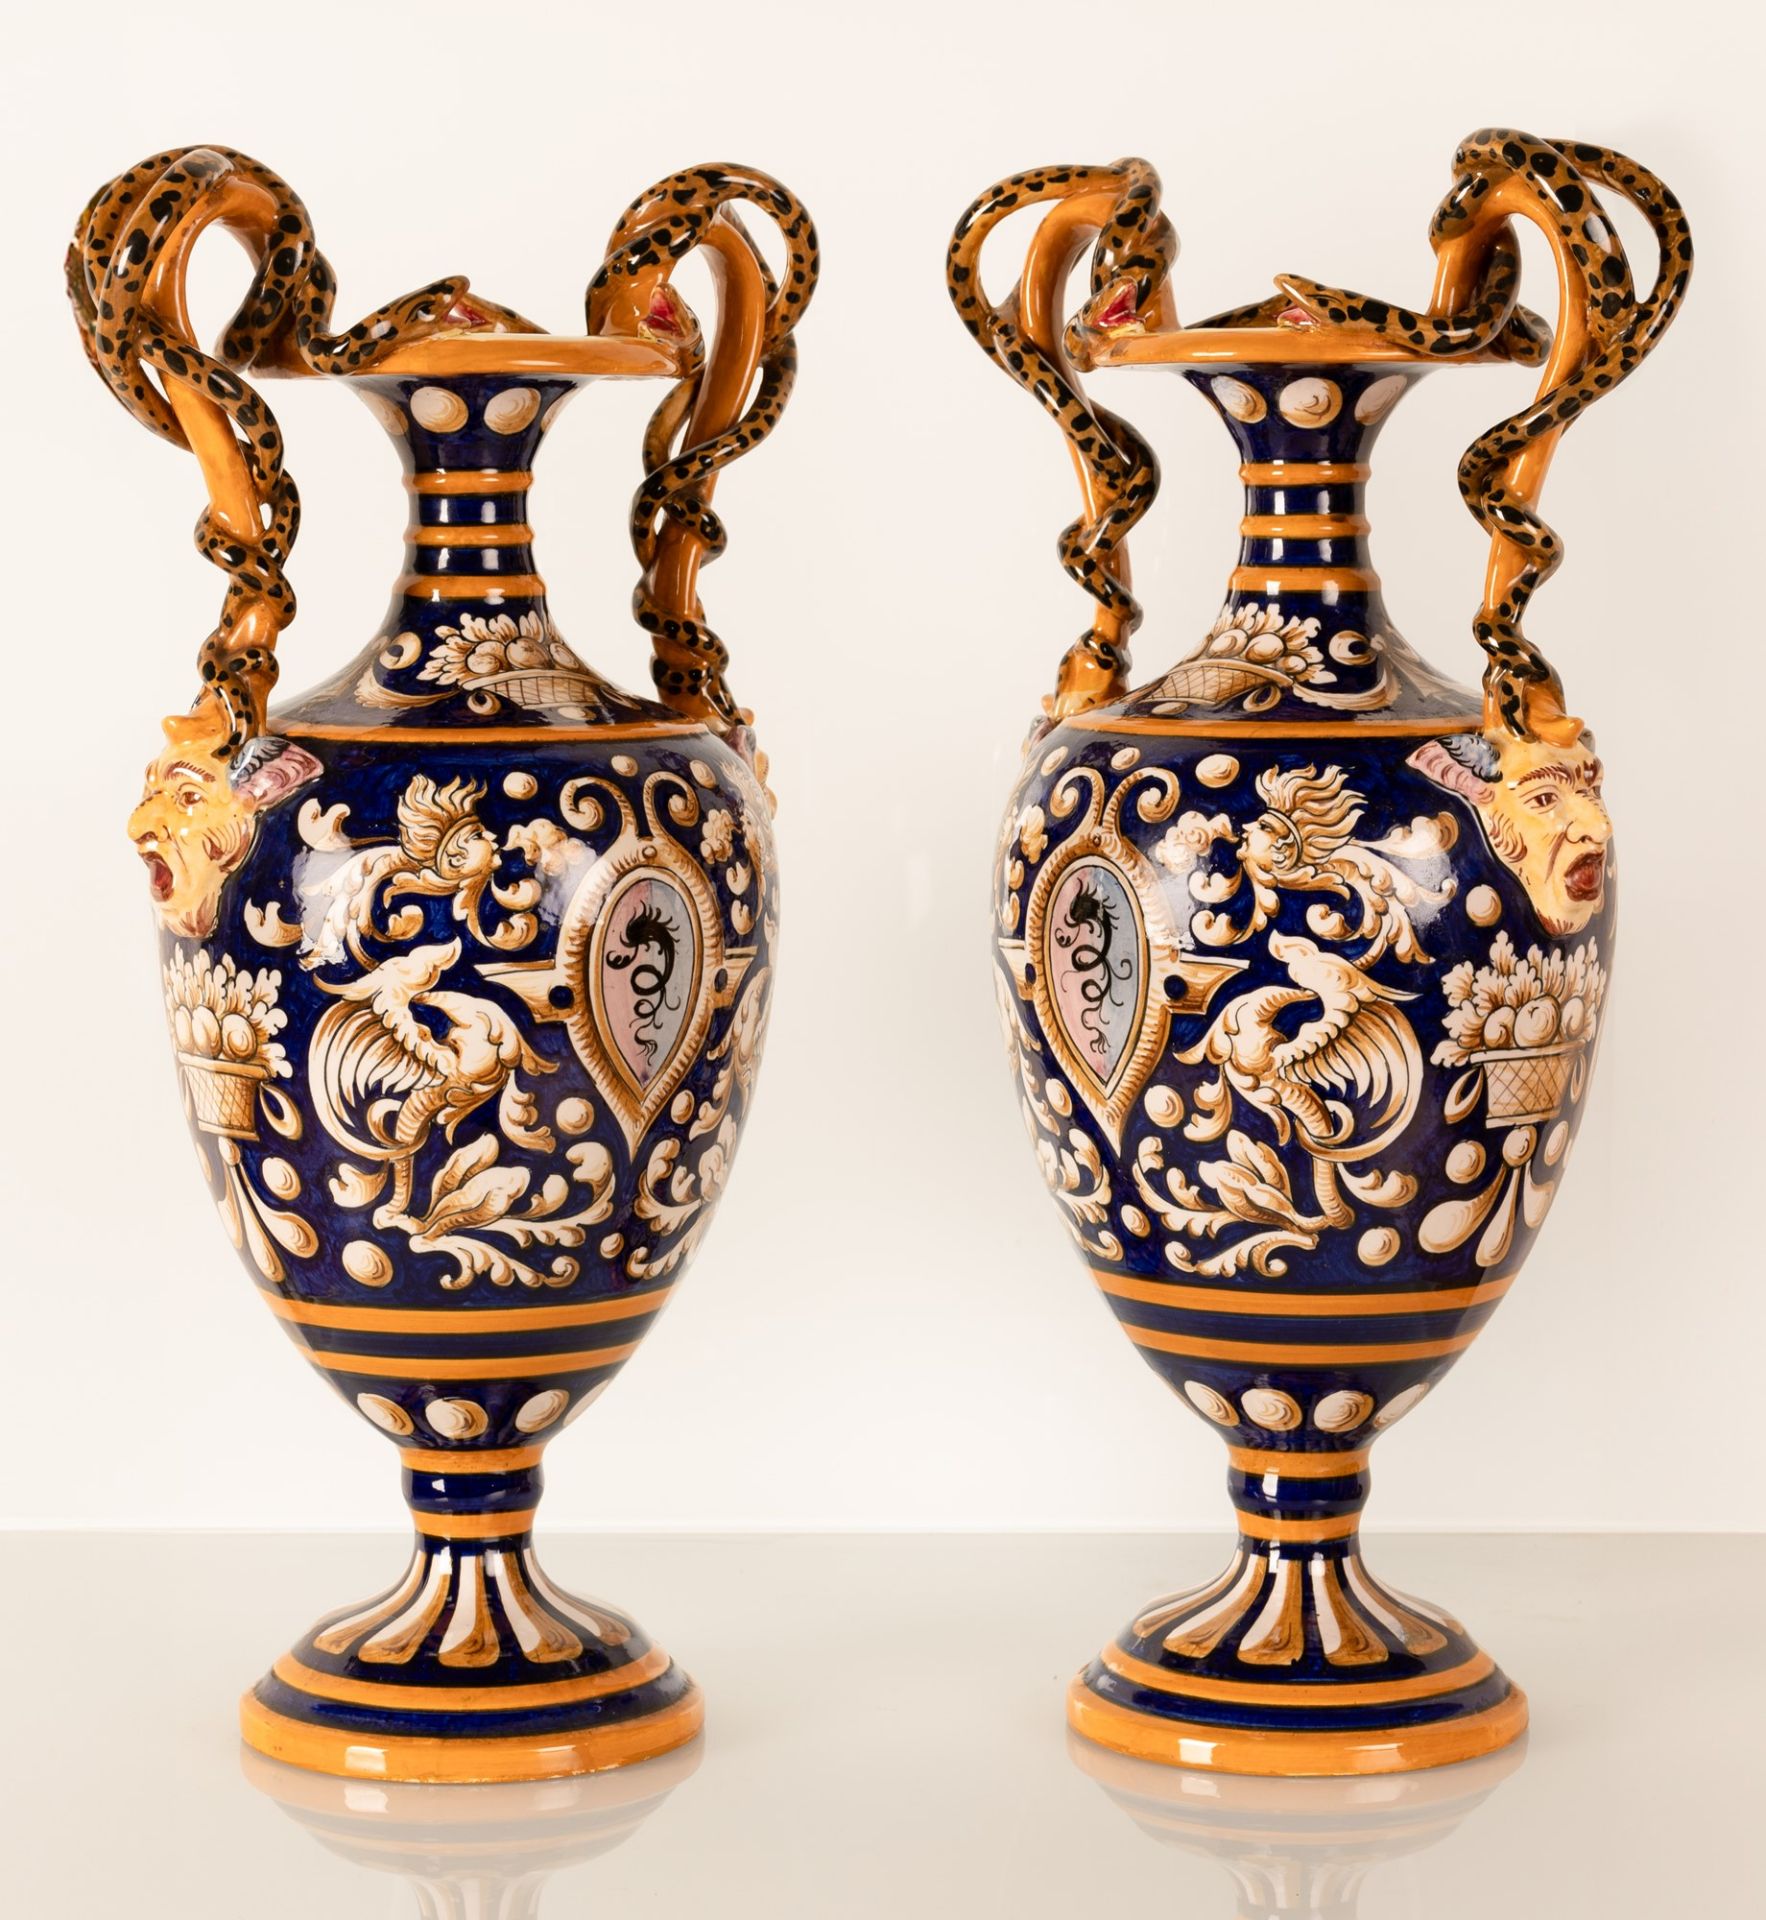 Coppia di vasi biansati con anse serpentiformi. Manifattura Egisto Fantechi, inizi del XX secolo - Image 2 of 7